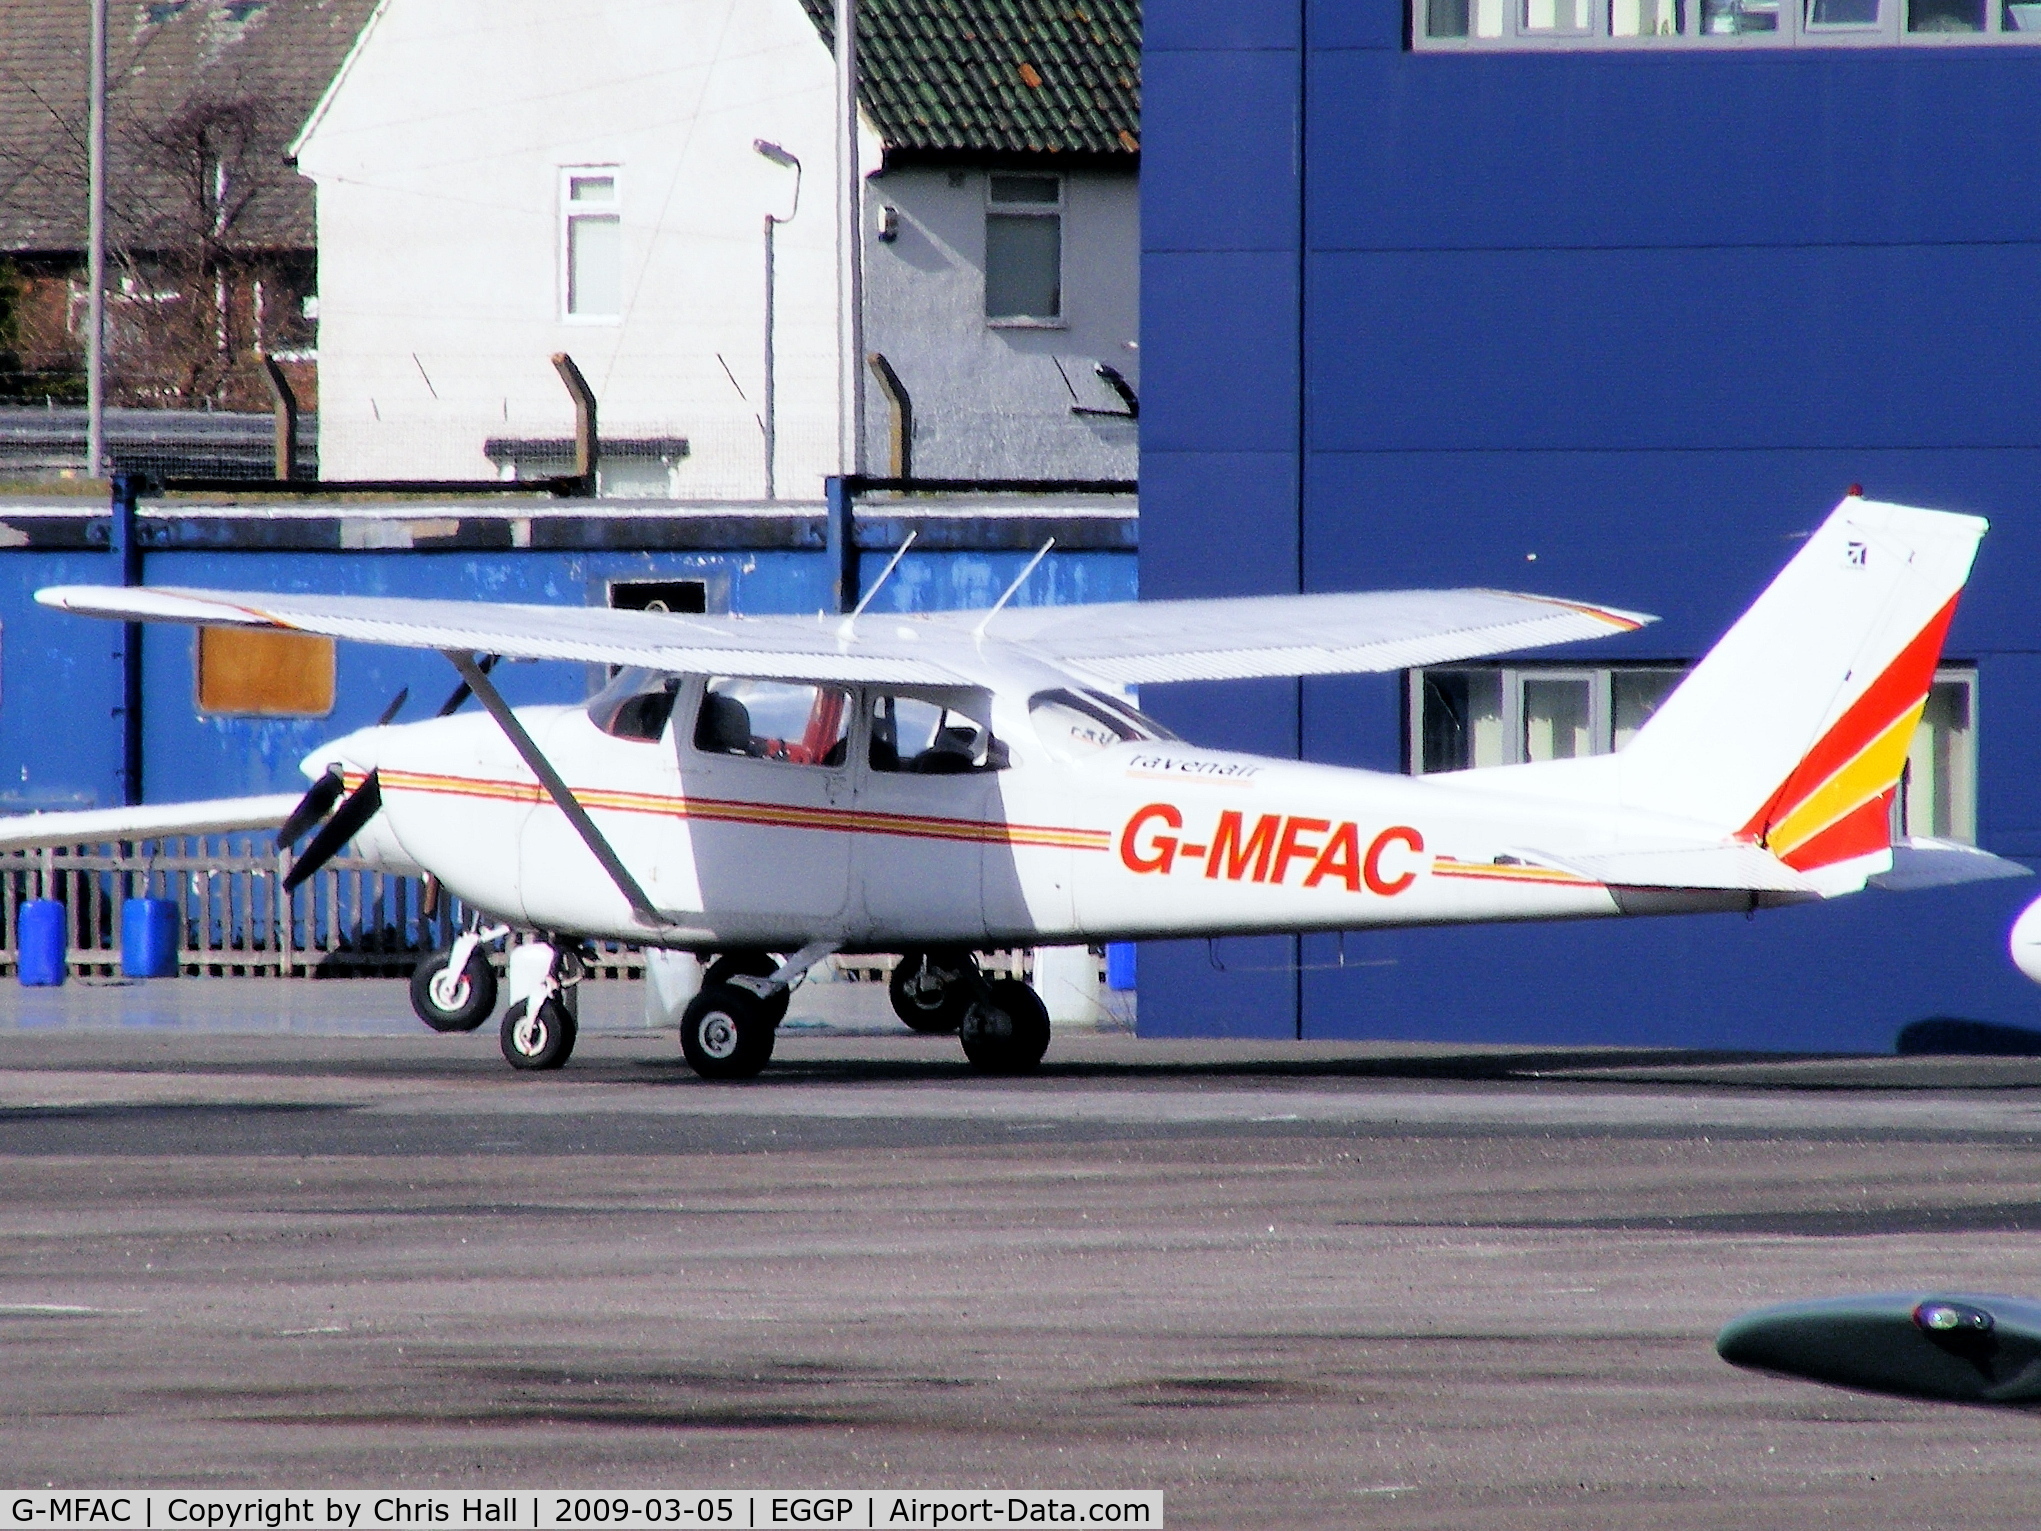 G-MFAC, 1967 Reims F172H Skyhawk C/N 0387, Ravenair, Previous ID: G-AVBZ